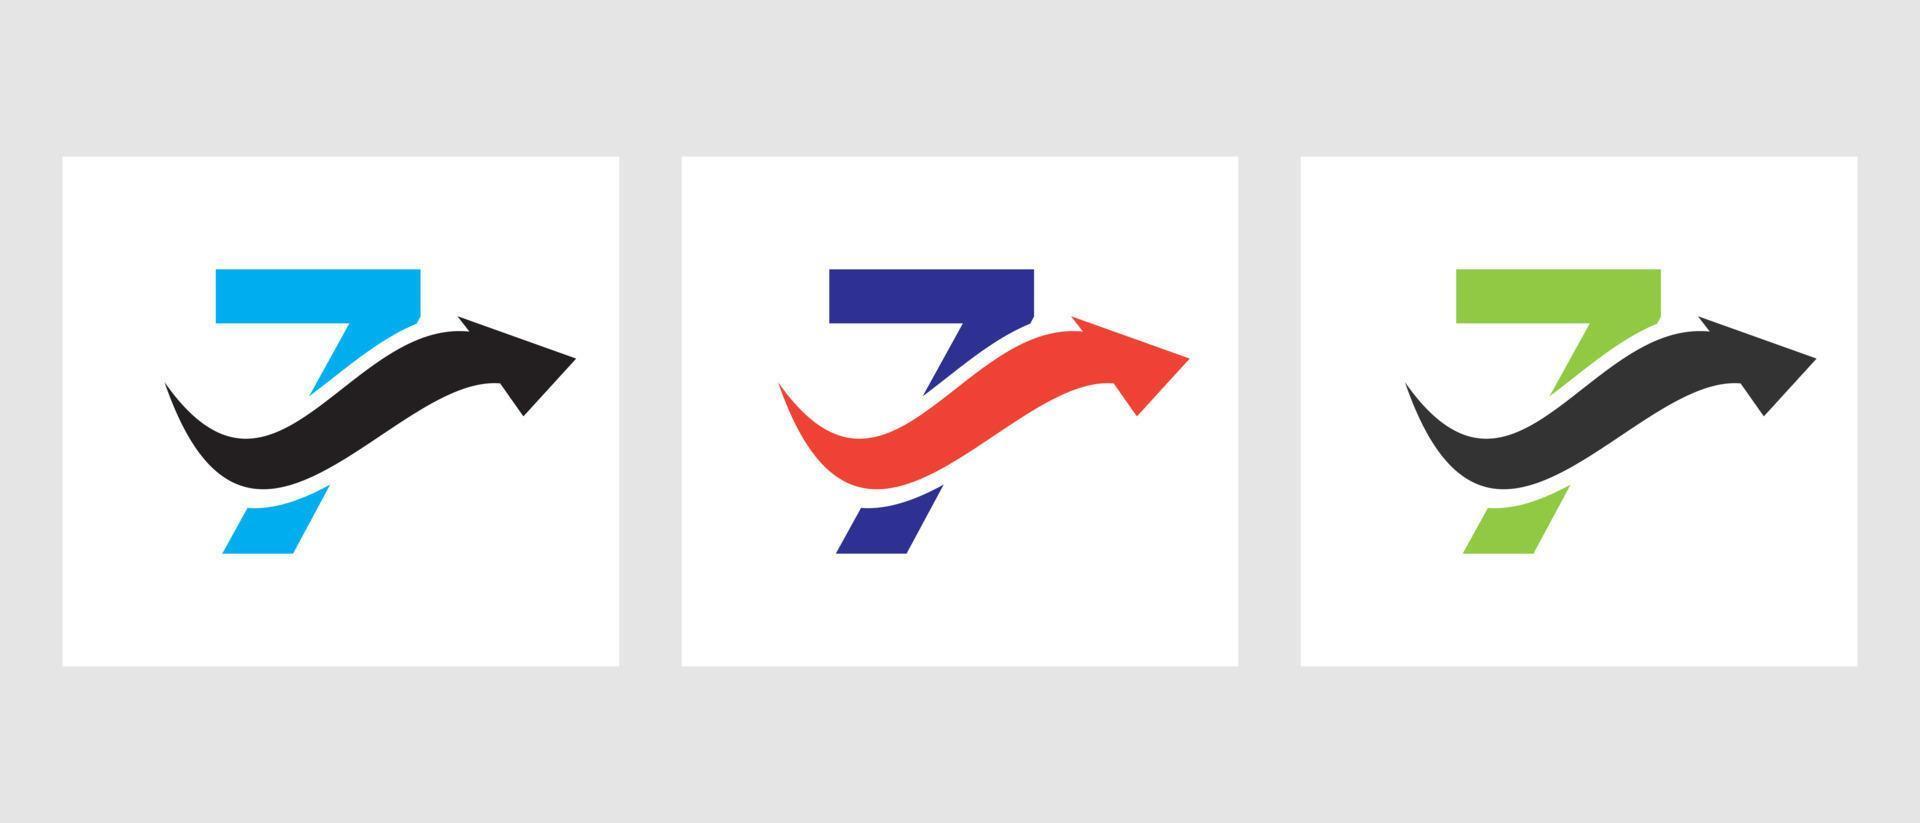 conceito de logotipo de finanças de letra 7 com símbolo de seta de crescimento vetor